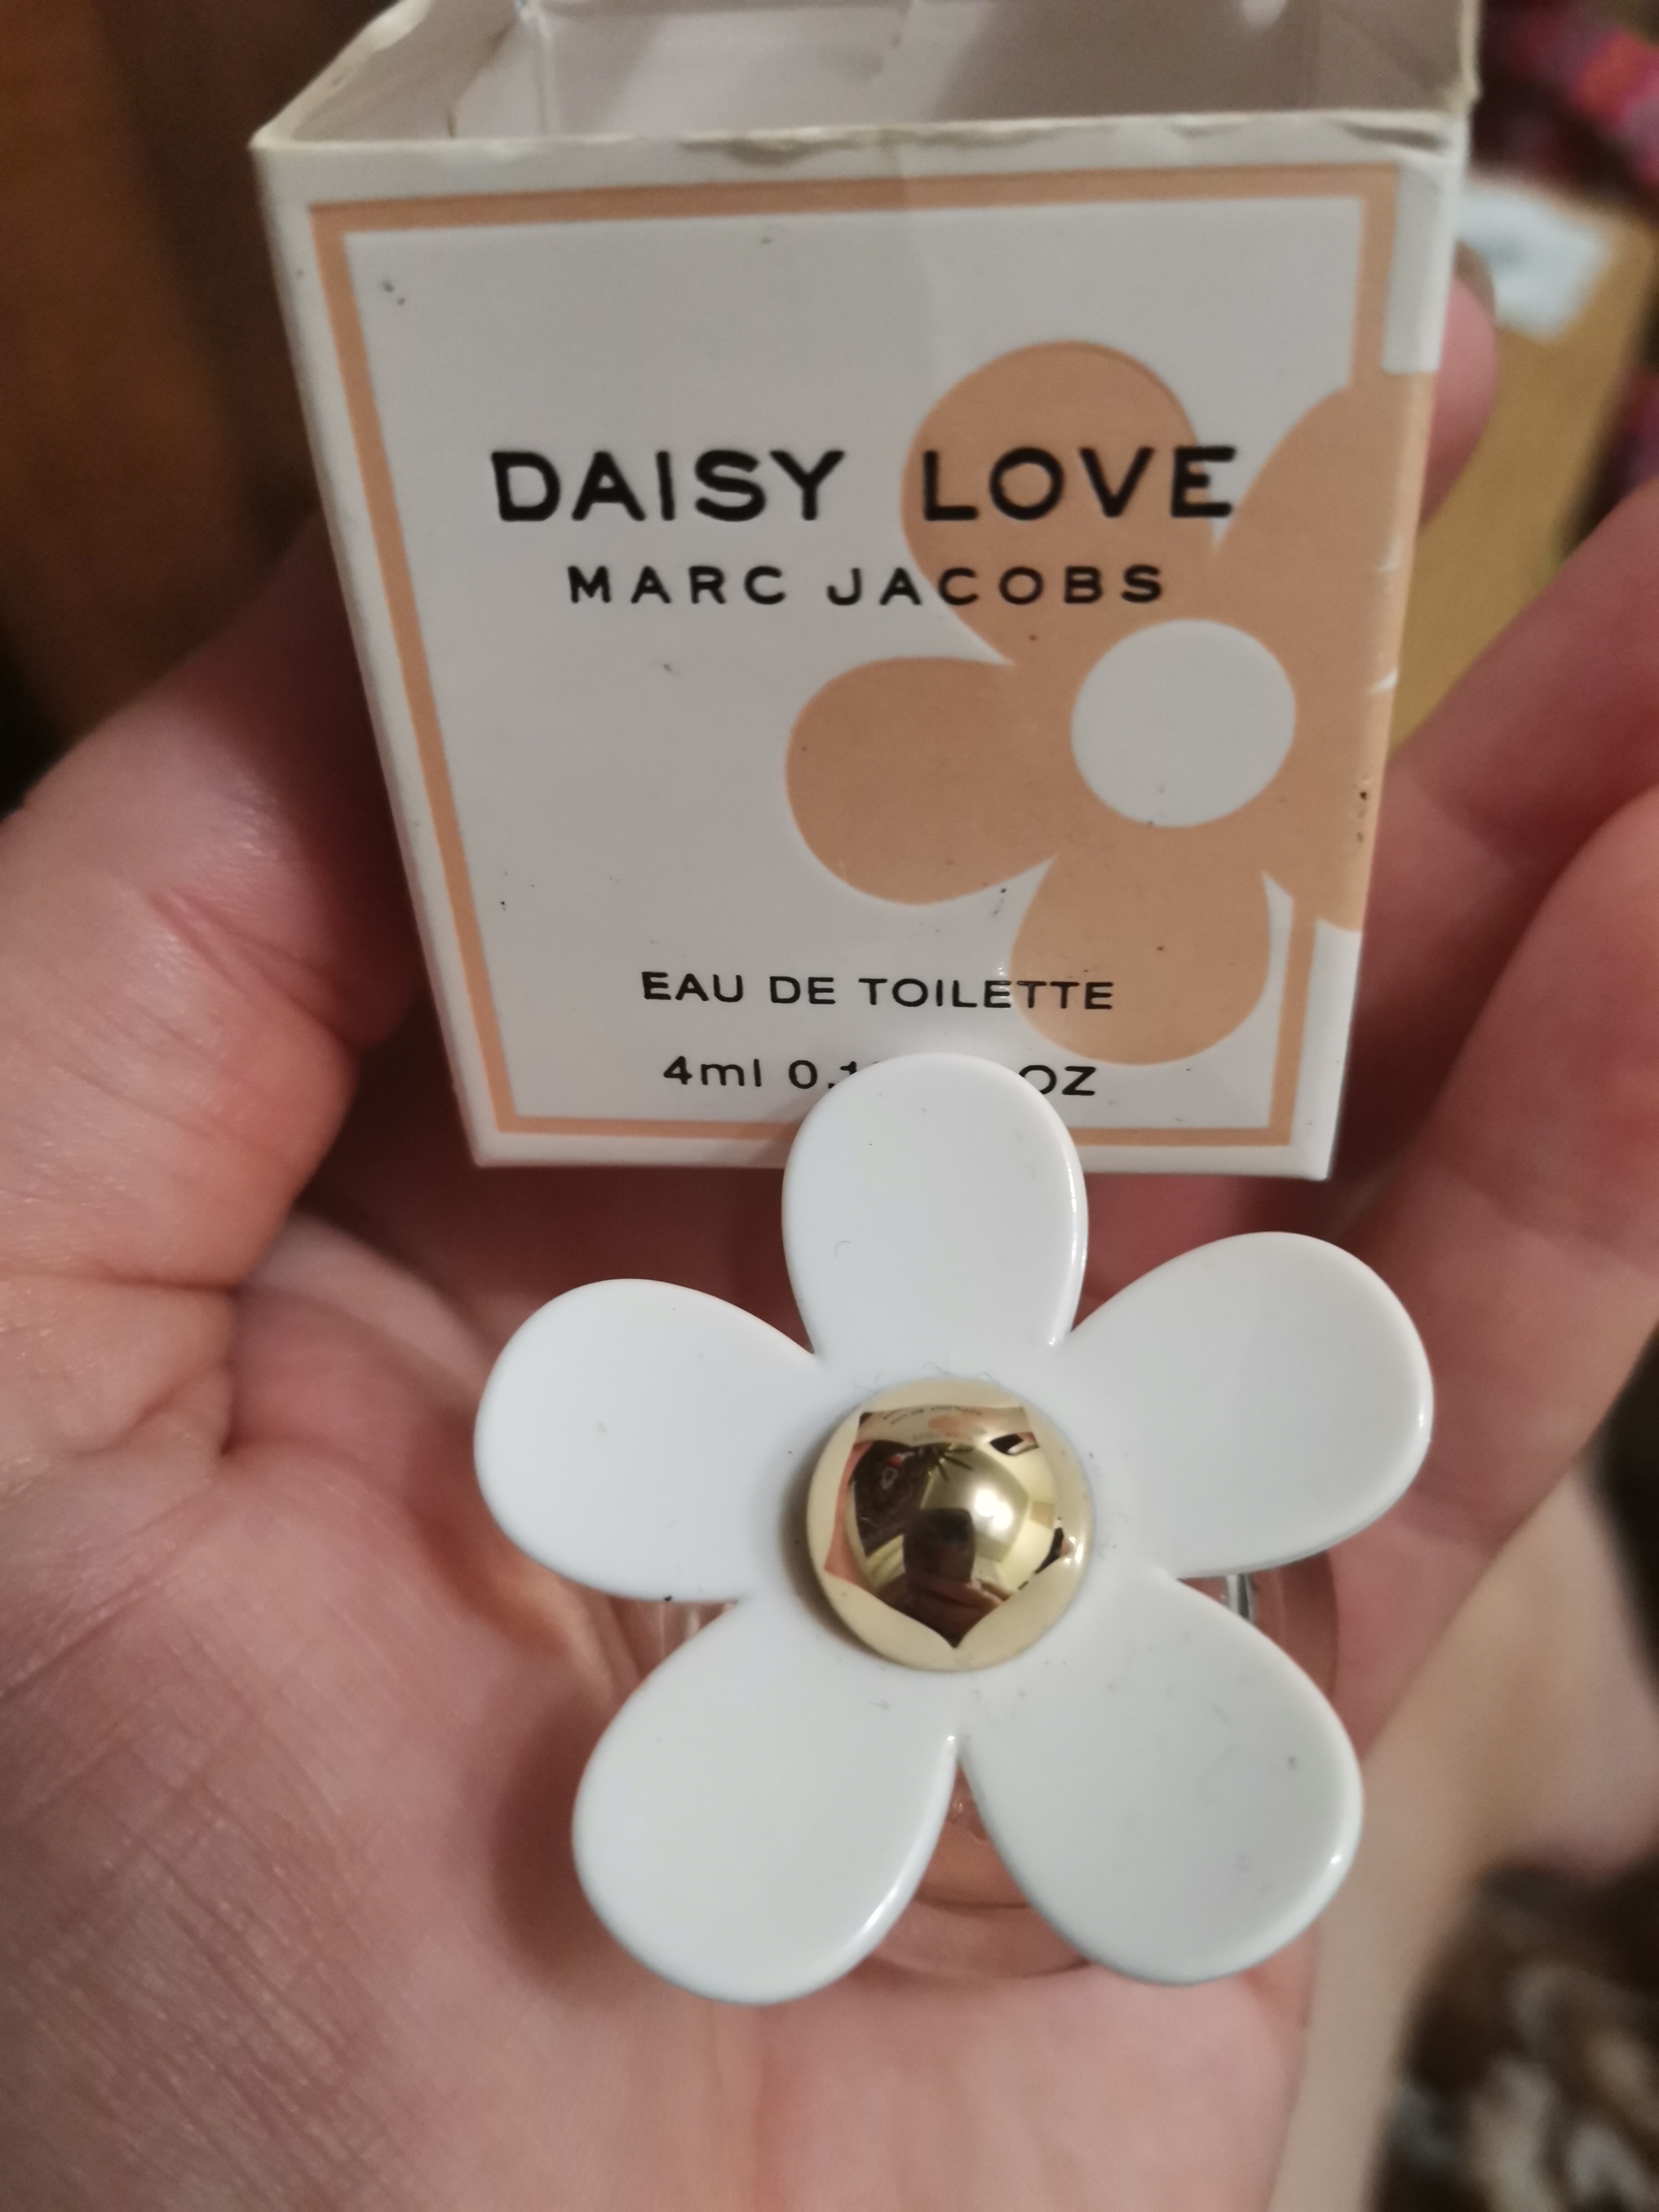 Marc Jacobs "Daisy Love"